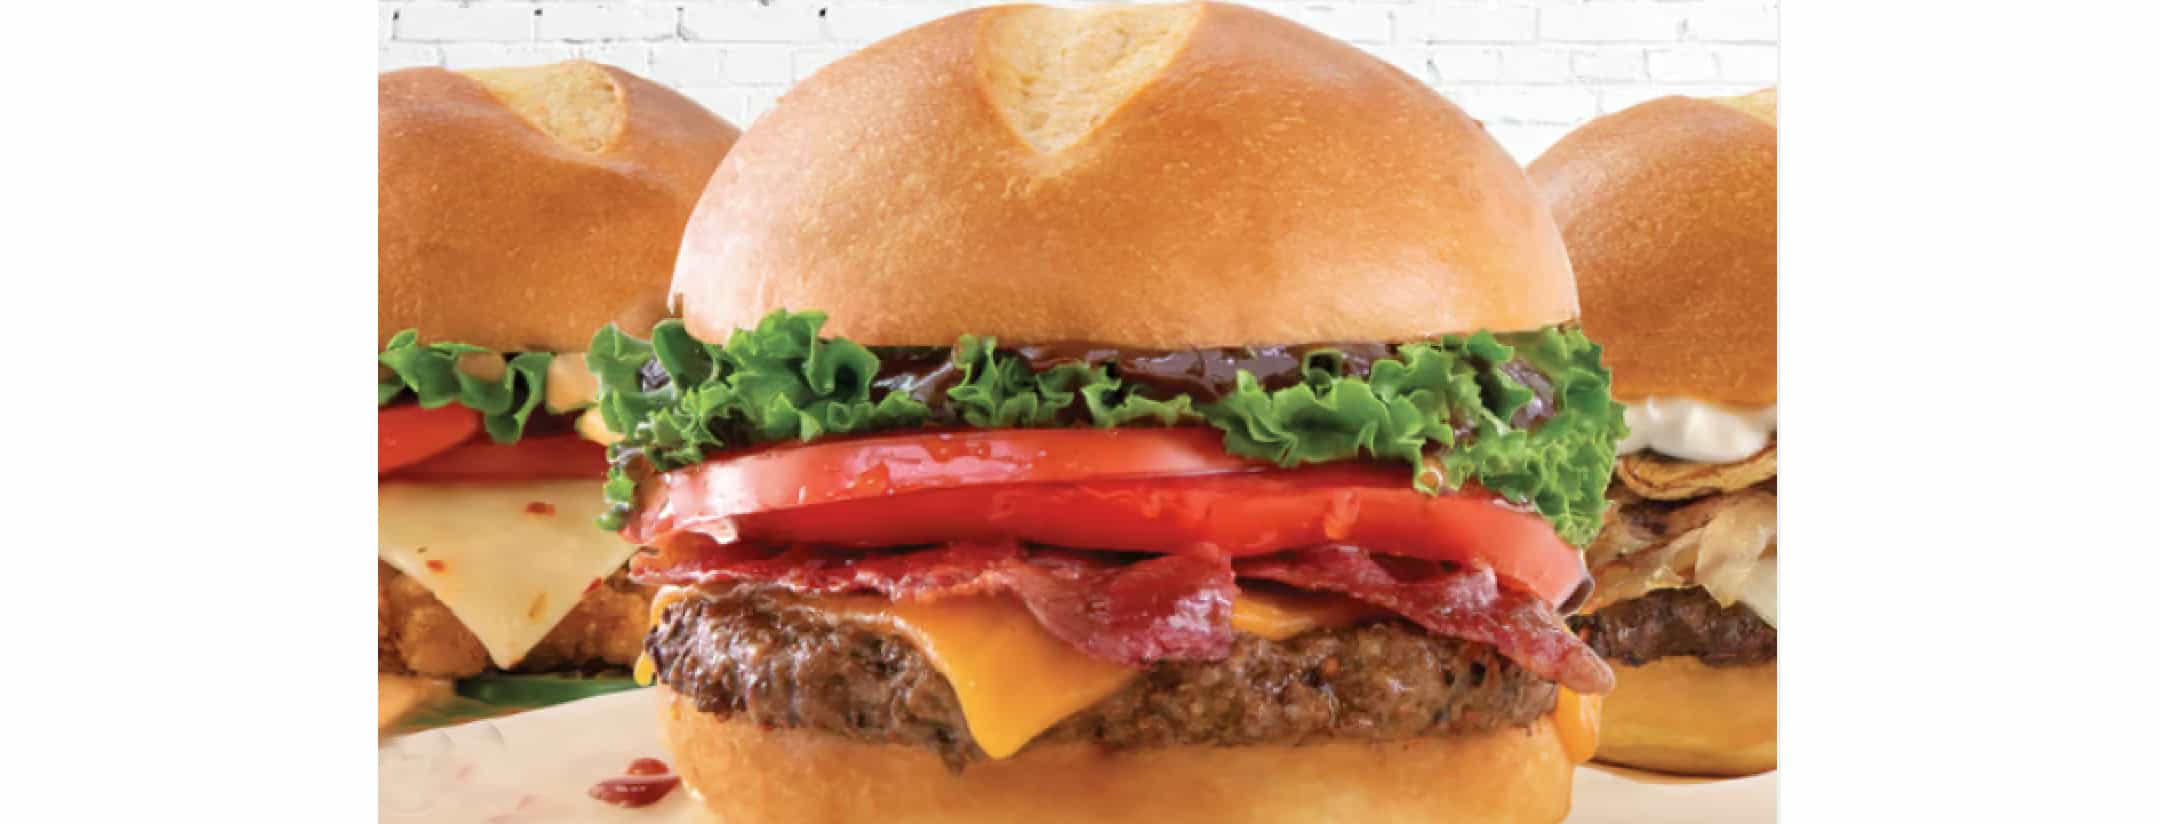 Boardwalk burgers fries shakes Oakville Mississauga Milton